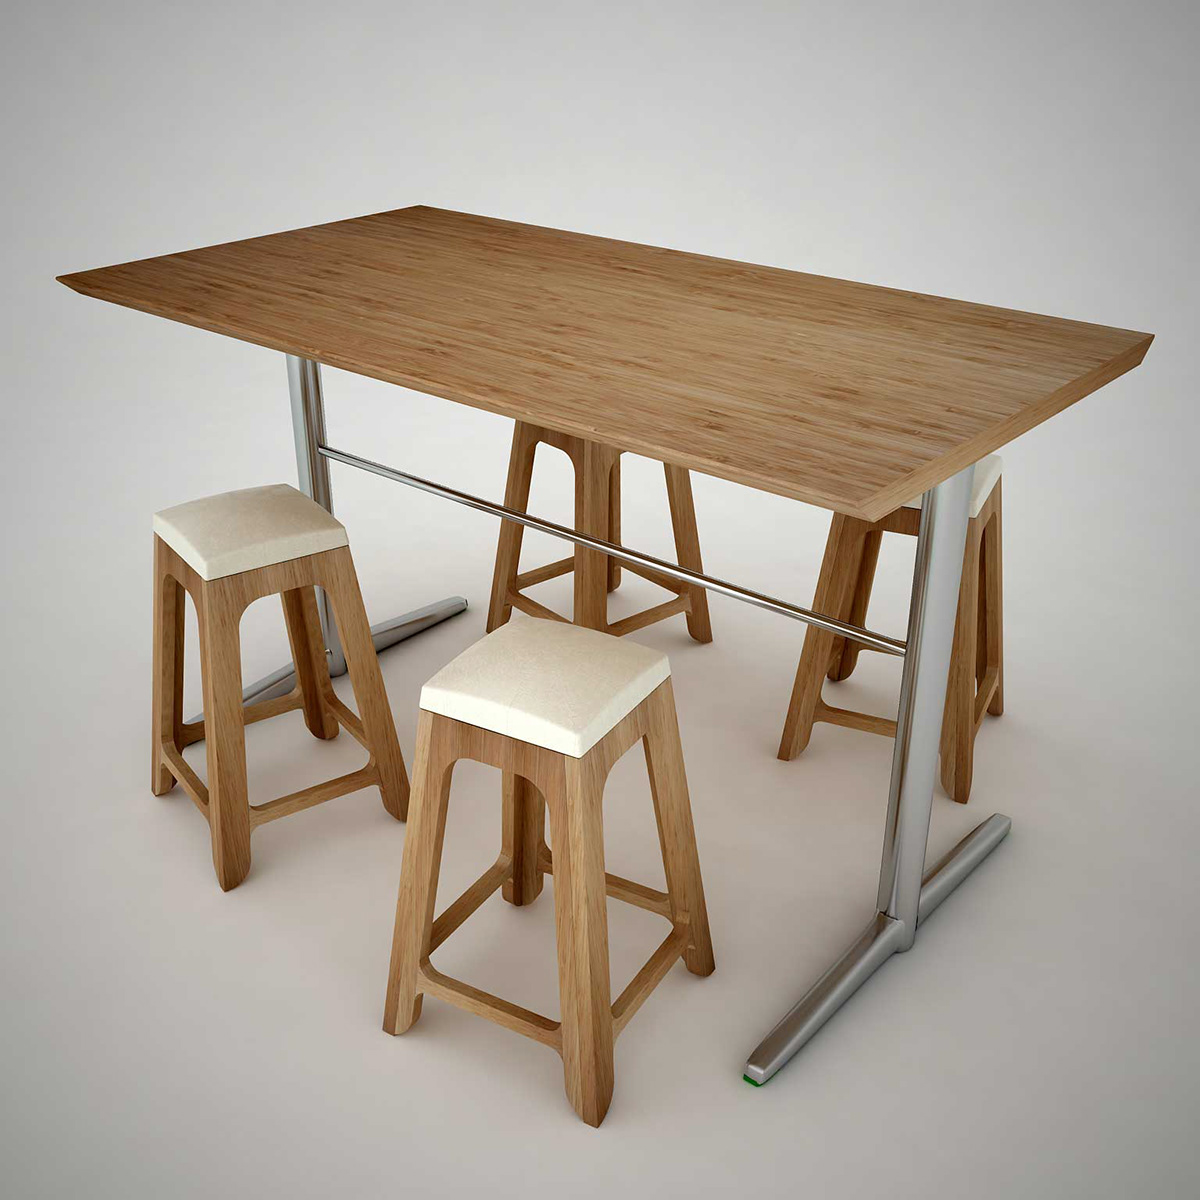 stool furniture design rattan product Interior rattanstool